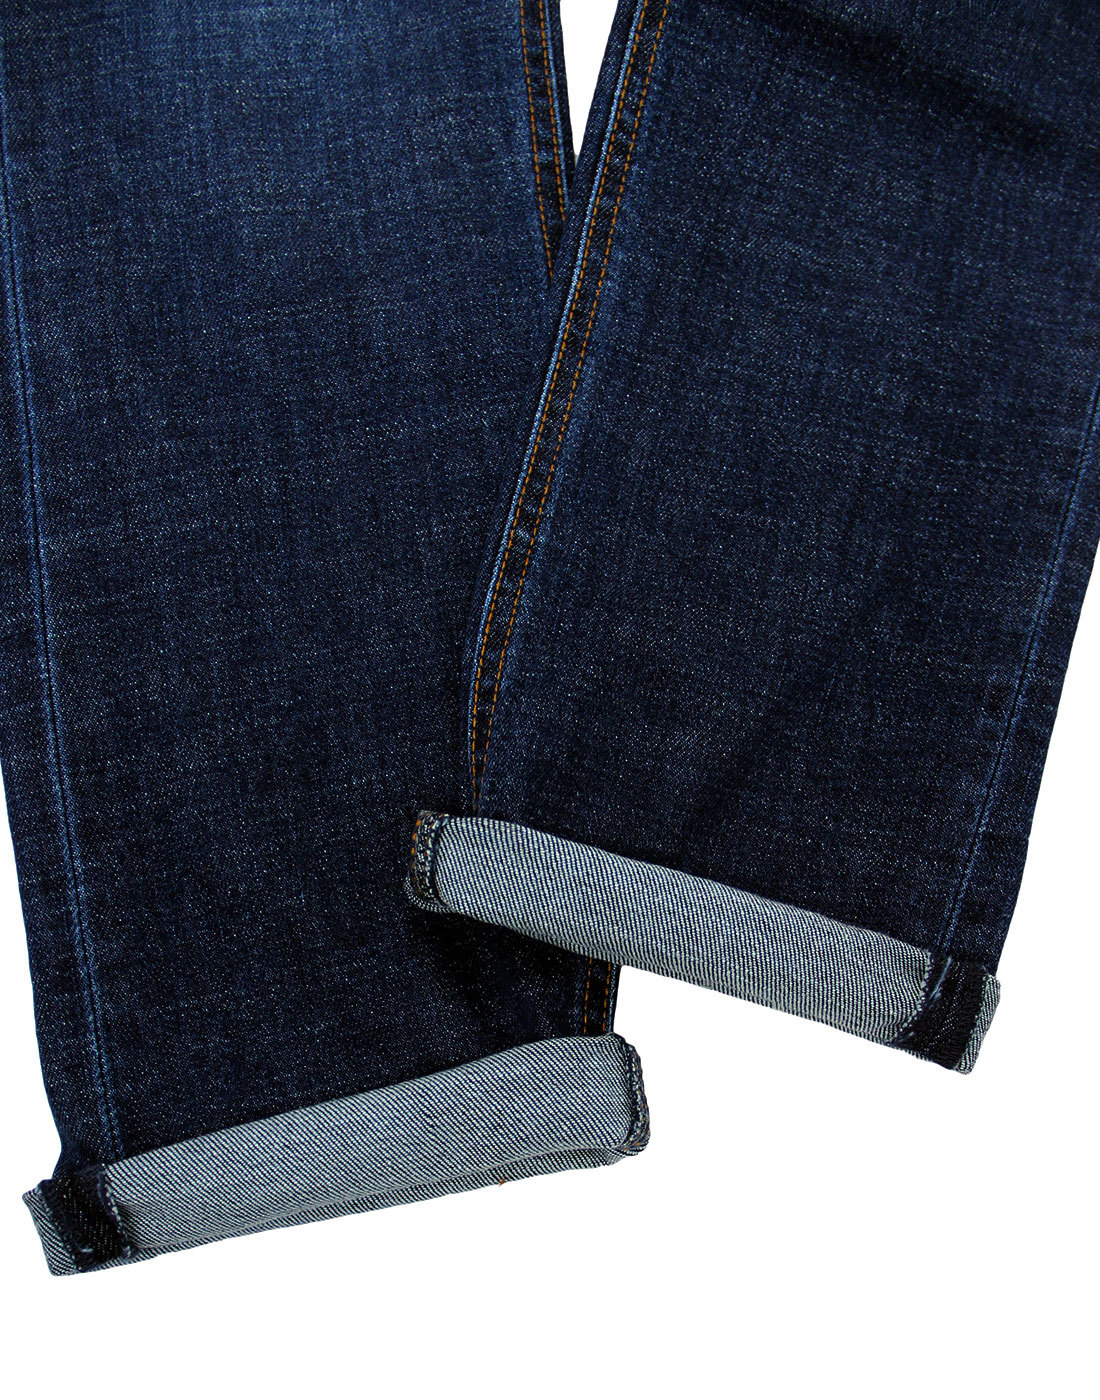 LOIS Sky Men's Retro 1980s Mod Slim Fit Denim Jeans in Dark Stone